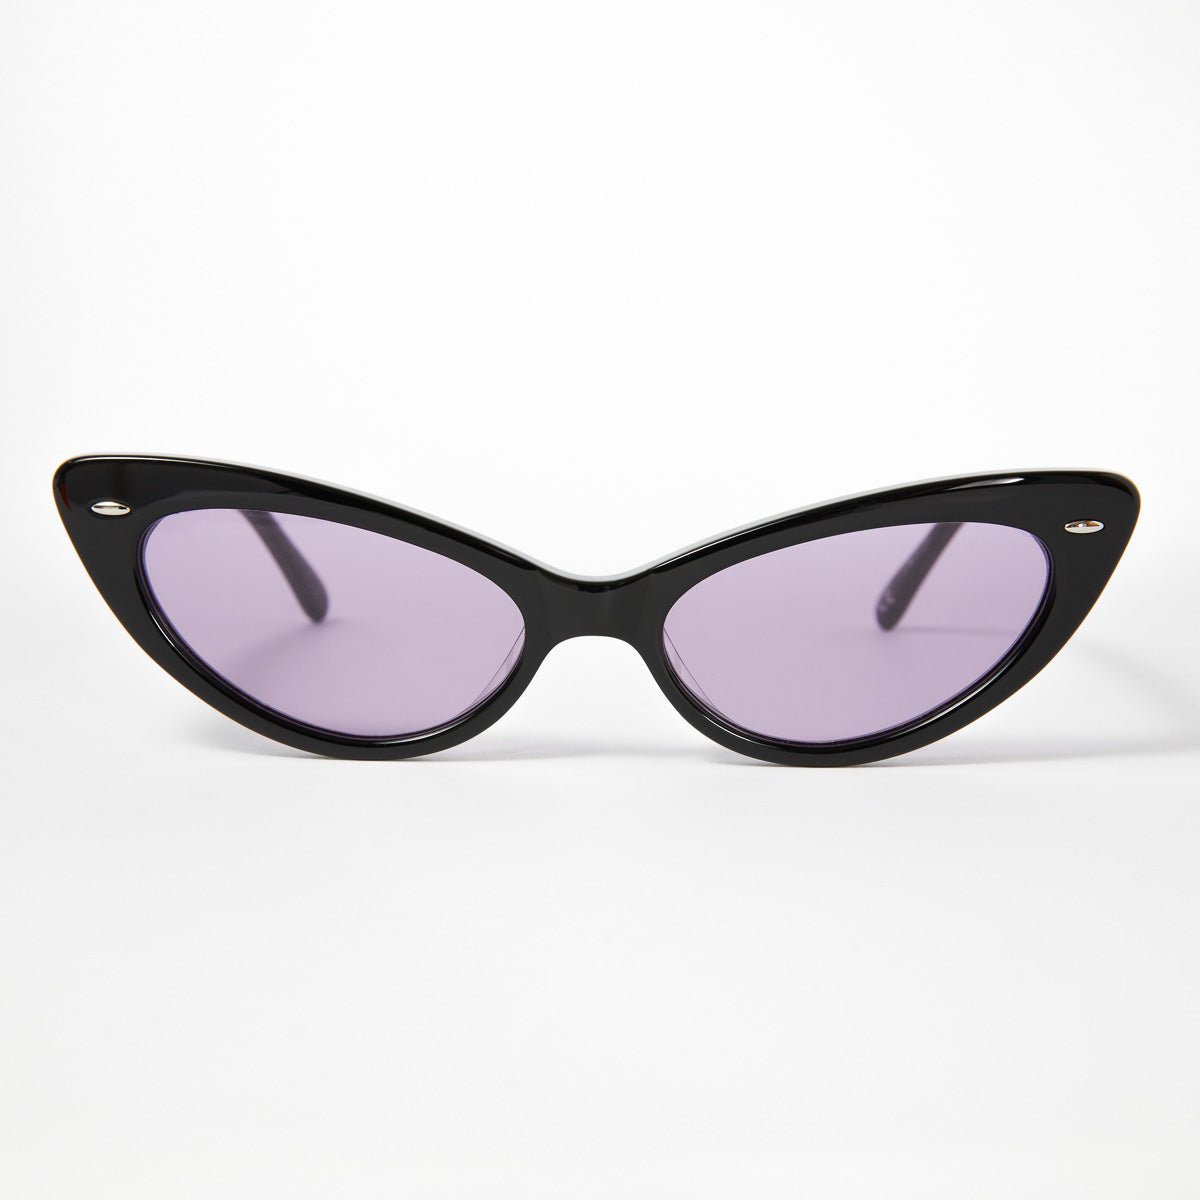 ZEPHYR - Black Polished Frames / Purple Lens ŁEOIDE